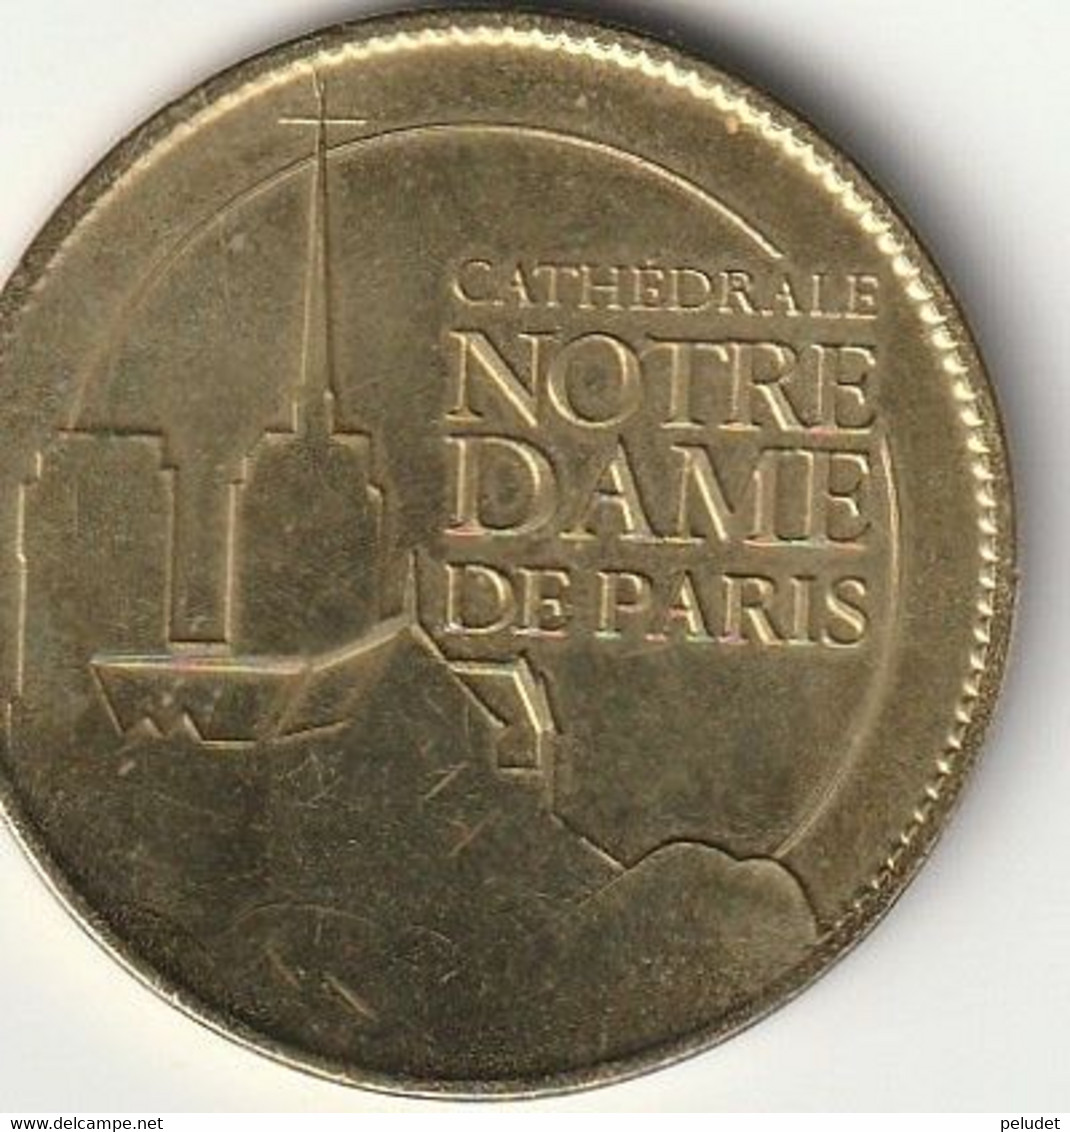 Cathedrale Notre Dame De Paris, Médaille Souvenir (jeton Touristique) Monnaie De Paris Arthus Bertrand - Ohne Datum